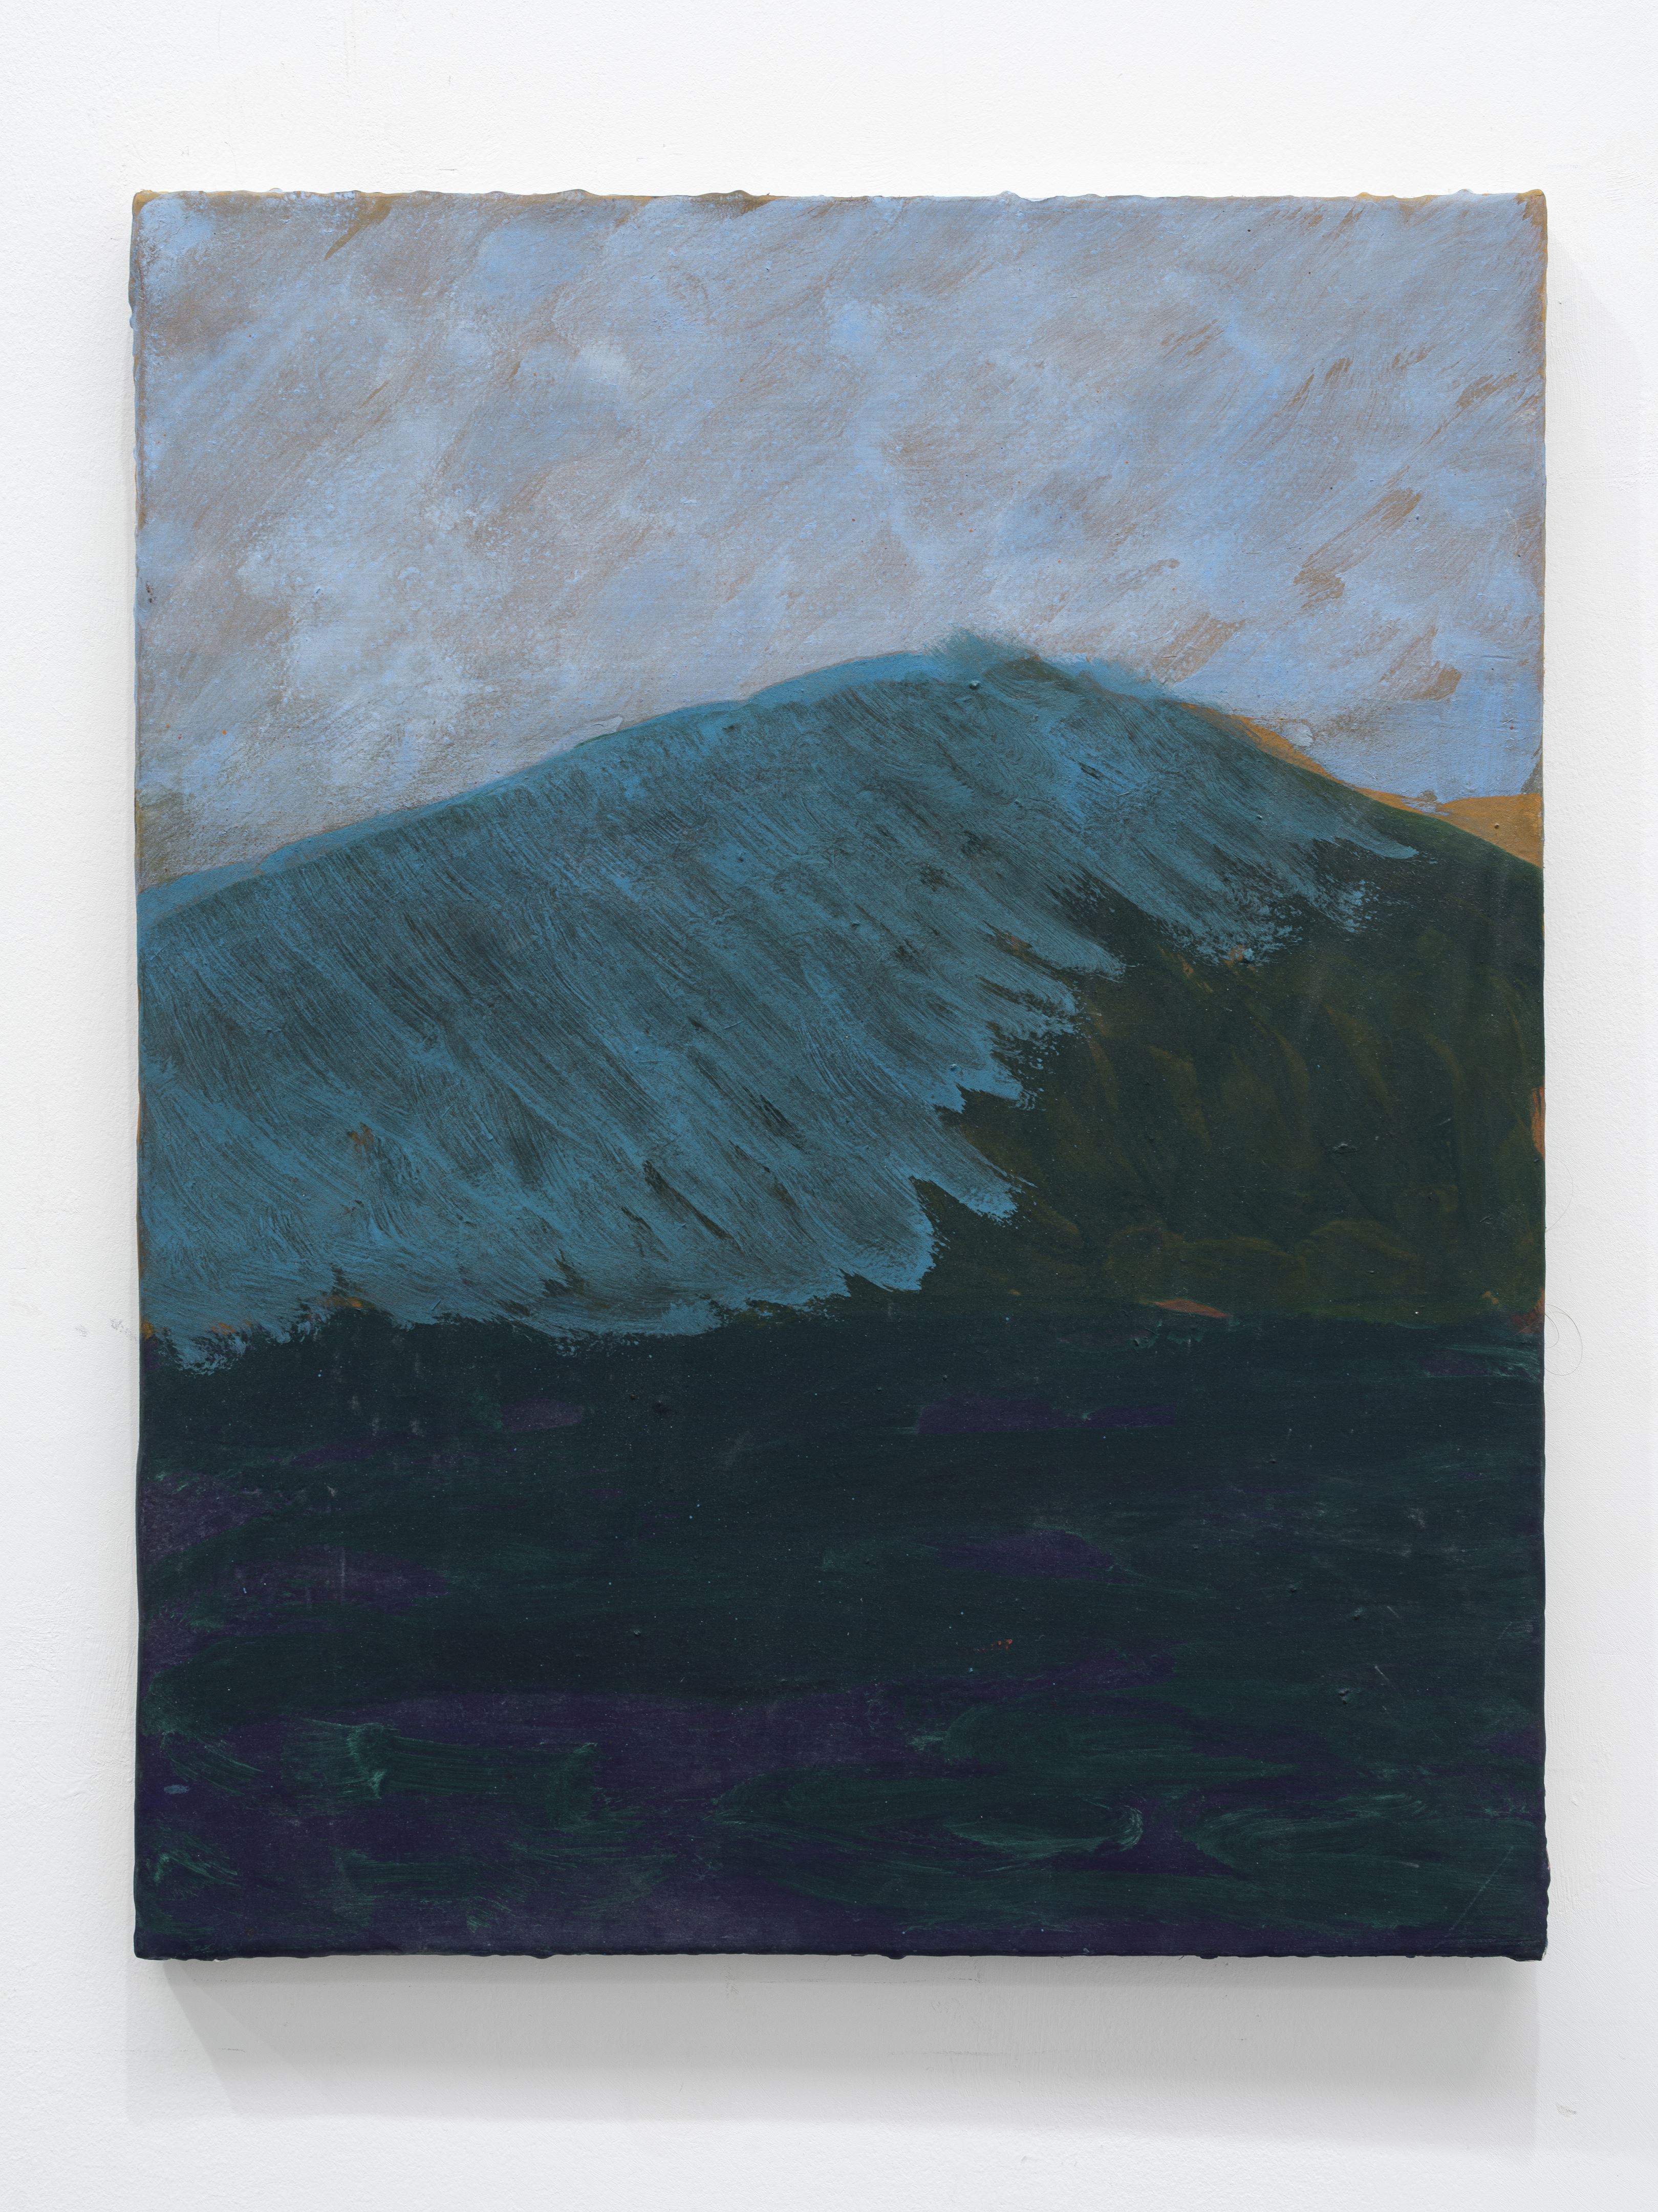 Montagne triangle (Paxos) I, 2022 Huile sur toile, 50 x 40 cm. Collection frac auvergne. Acquisition 2023.